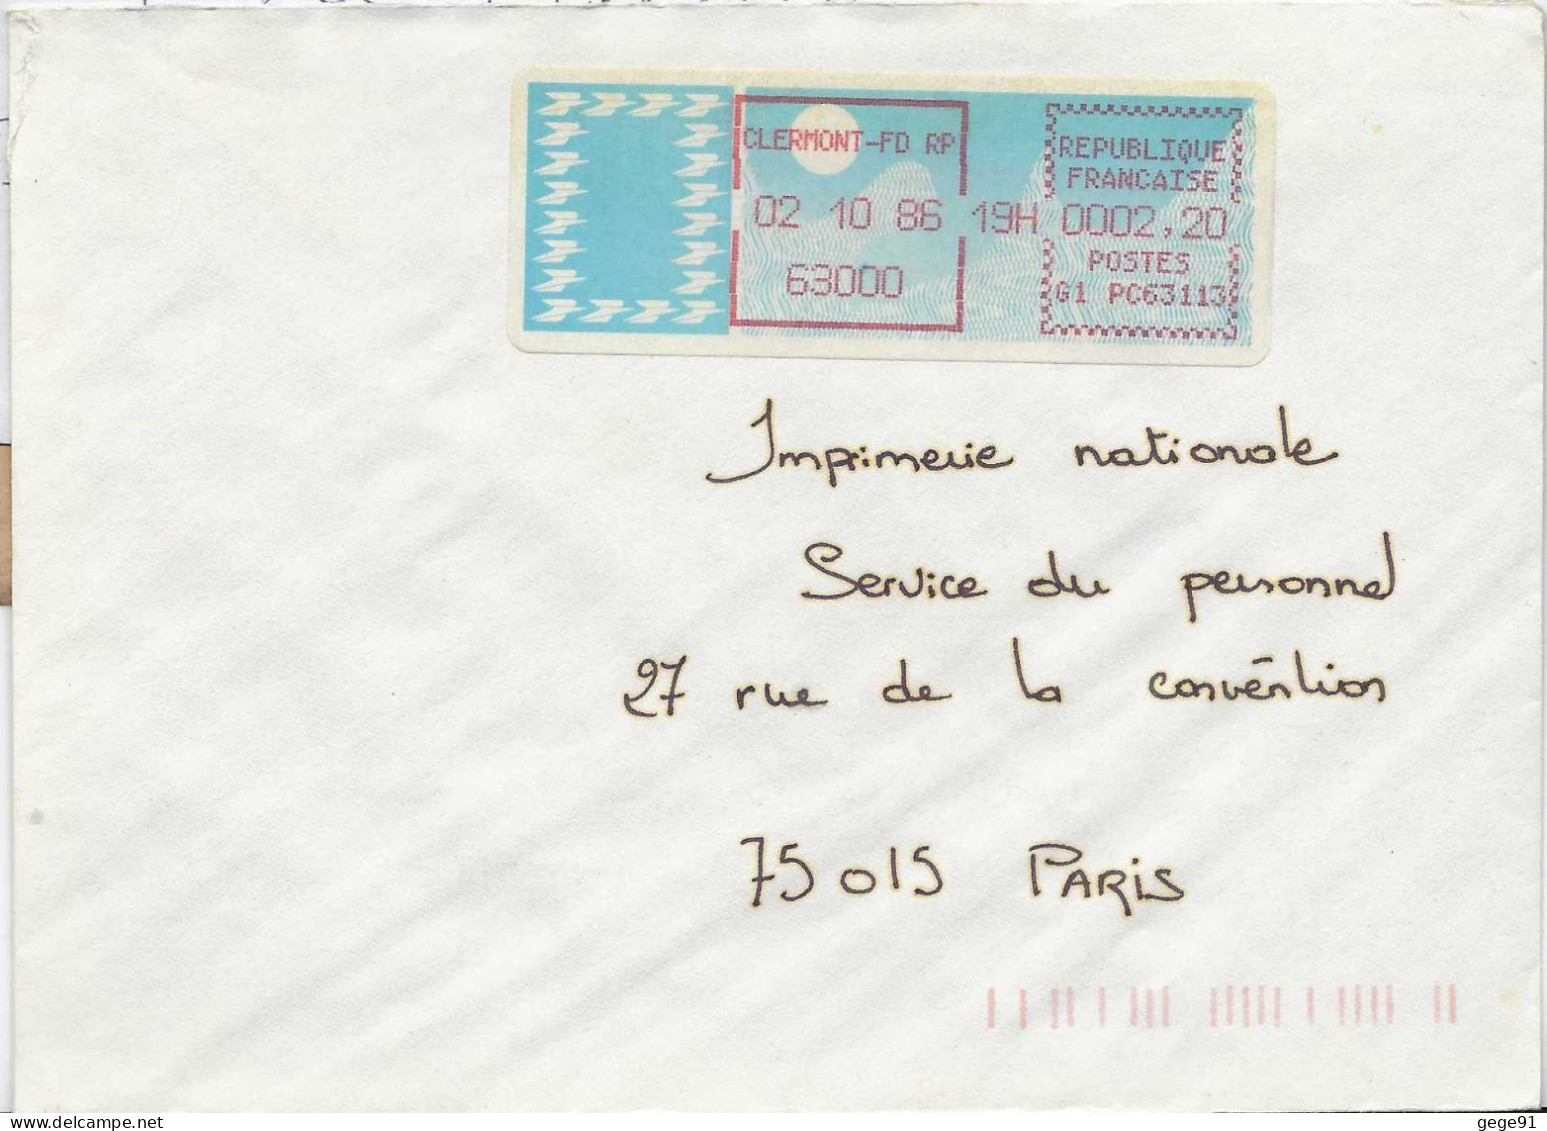 Vignette D'affranchissement De Guichet - MOG - Clermont Ferrand RP - Puy De Dôme - 1985 Papier « Carrier »